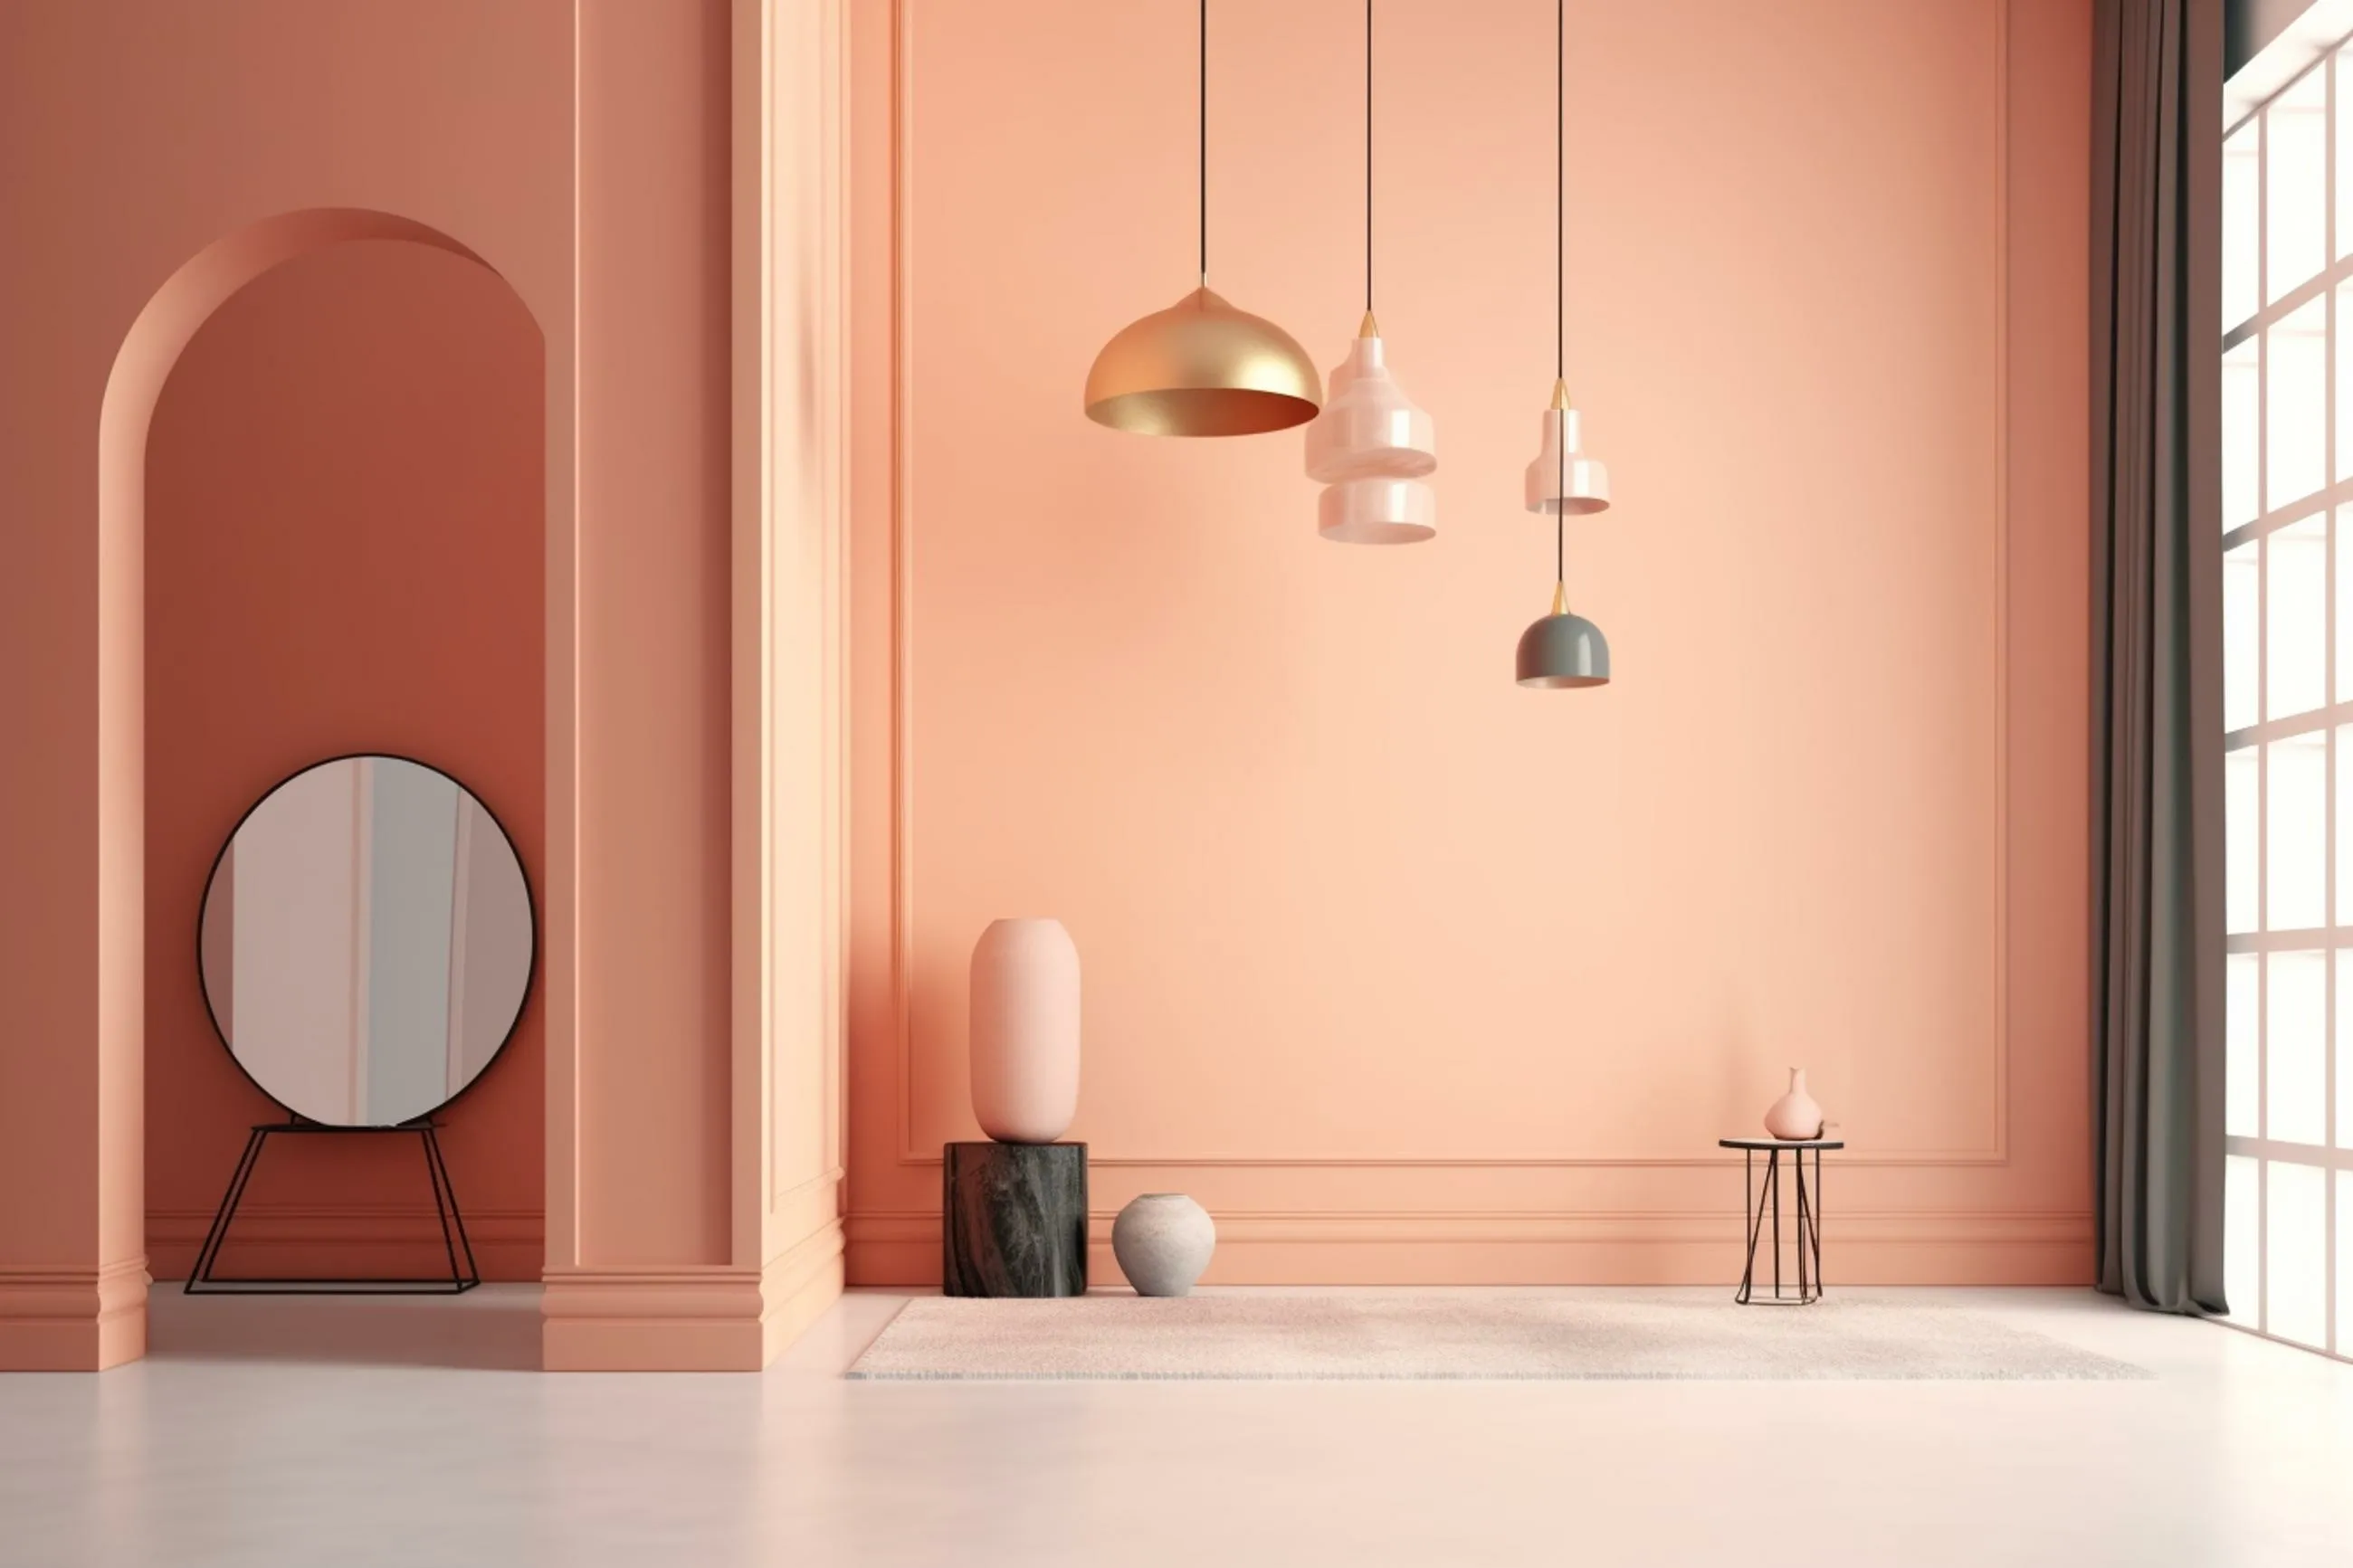 Salon w stylu minimalistycznym w kolorze peach fuzz. Z sufitu wiszą żyrandole, po lewej stronie znajduje się lustro.